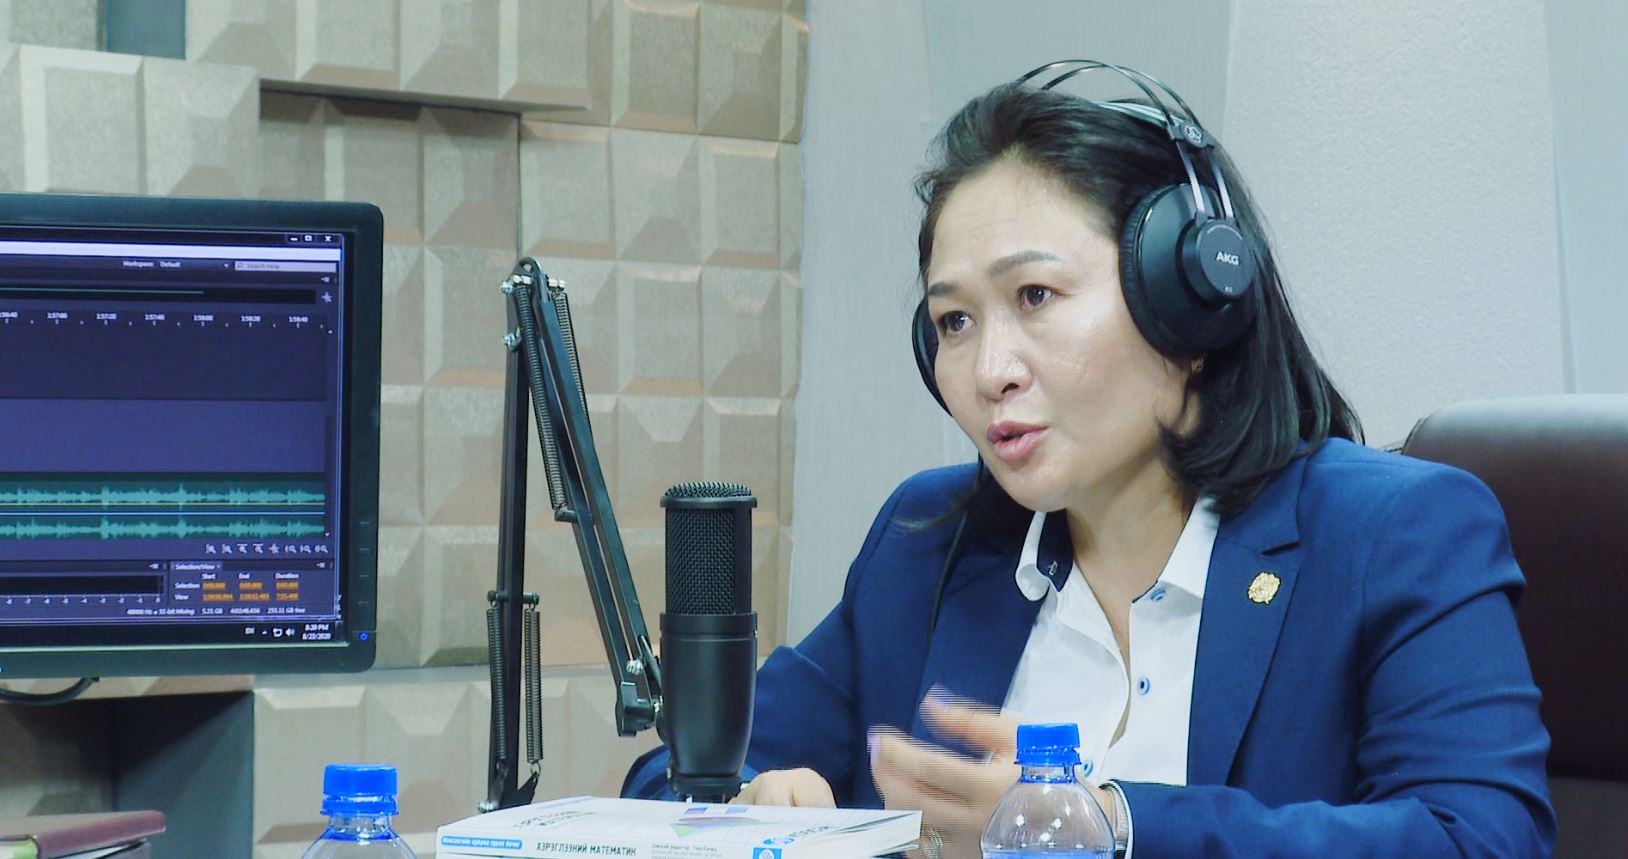 Ц.Байгалмаа: Монгол хүний онцлог дээр суурилж, нэгдмэл үнэт зүйлтэй иргэдийг төлөвшүүлдэг боловсролын систем хэрэгтэй